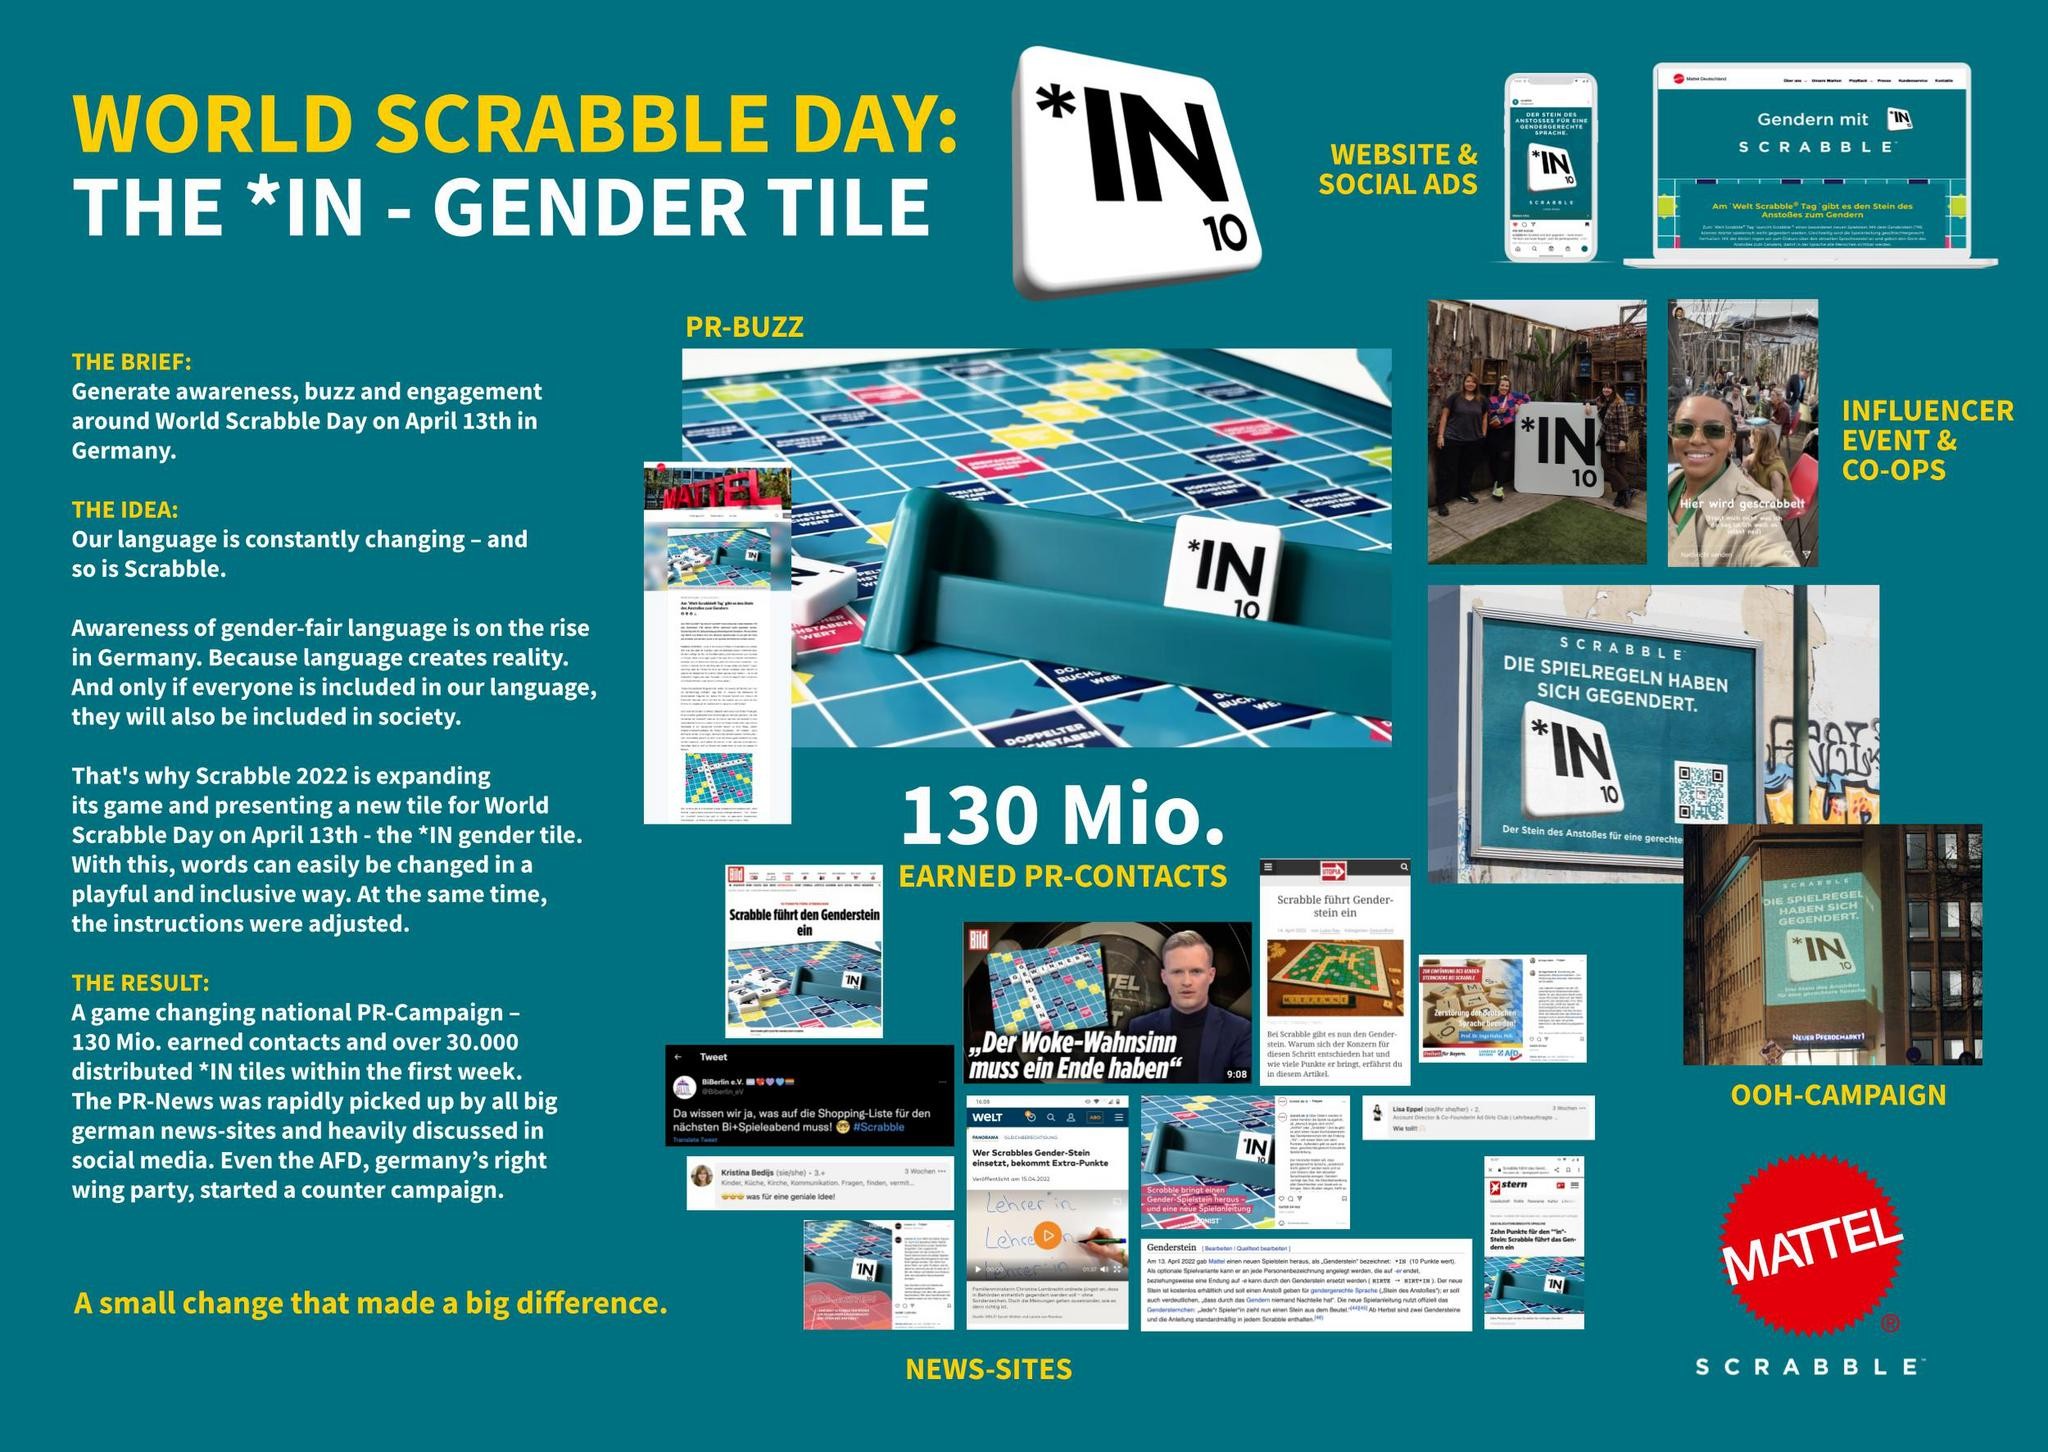 World Scrabble Day – *IN gender tile